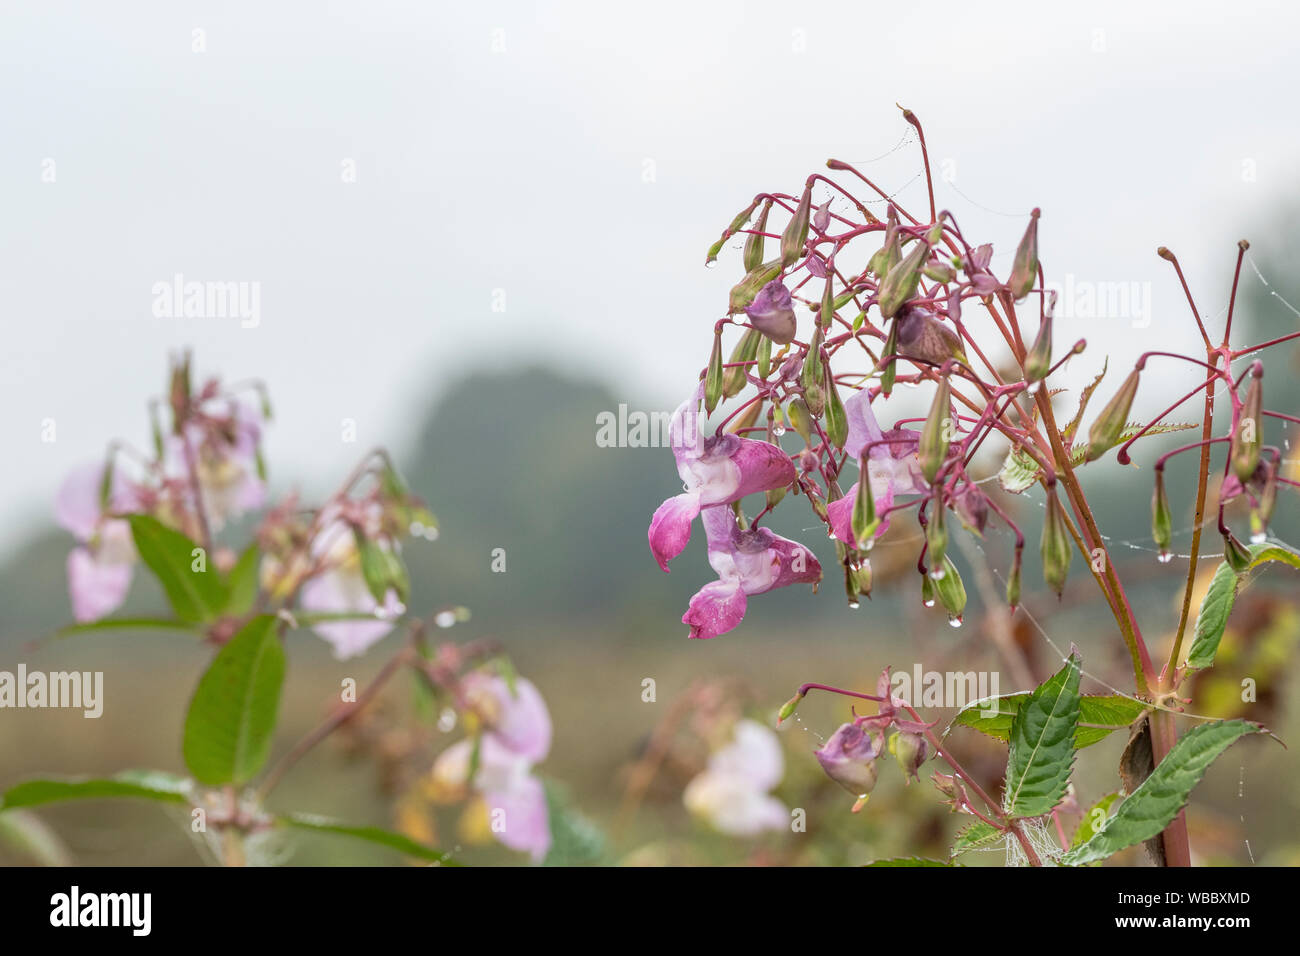 Flores y hojas superiores de problemáticas Bálsamo / Impatiens glandulifera del Himalaya. Le gusta el suelo húmedo / tierra, ríos, riberas, hygrophilous. Foto de stock